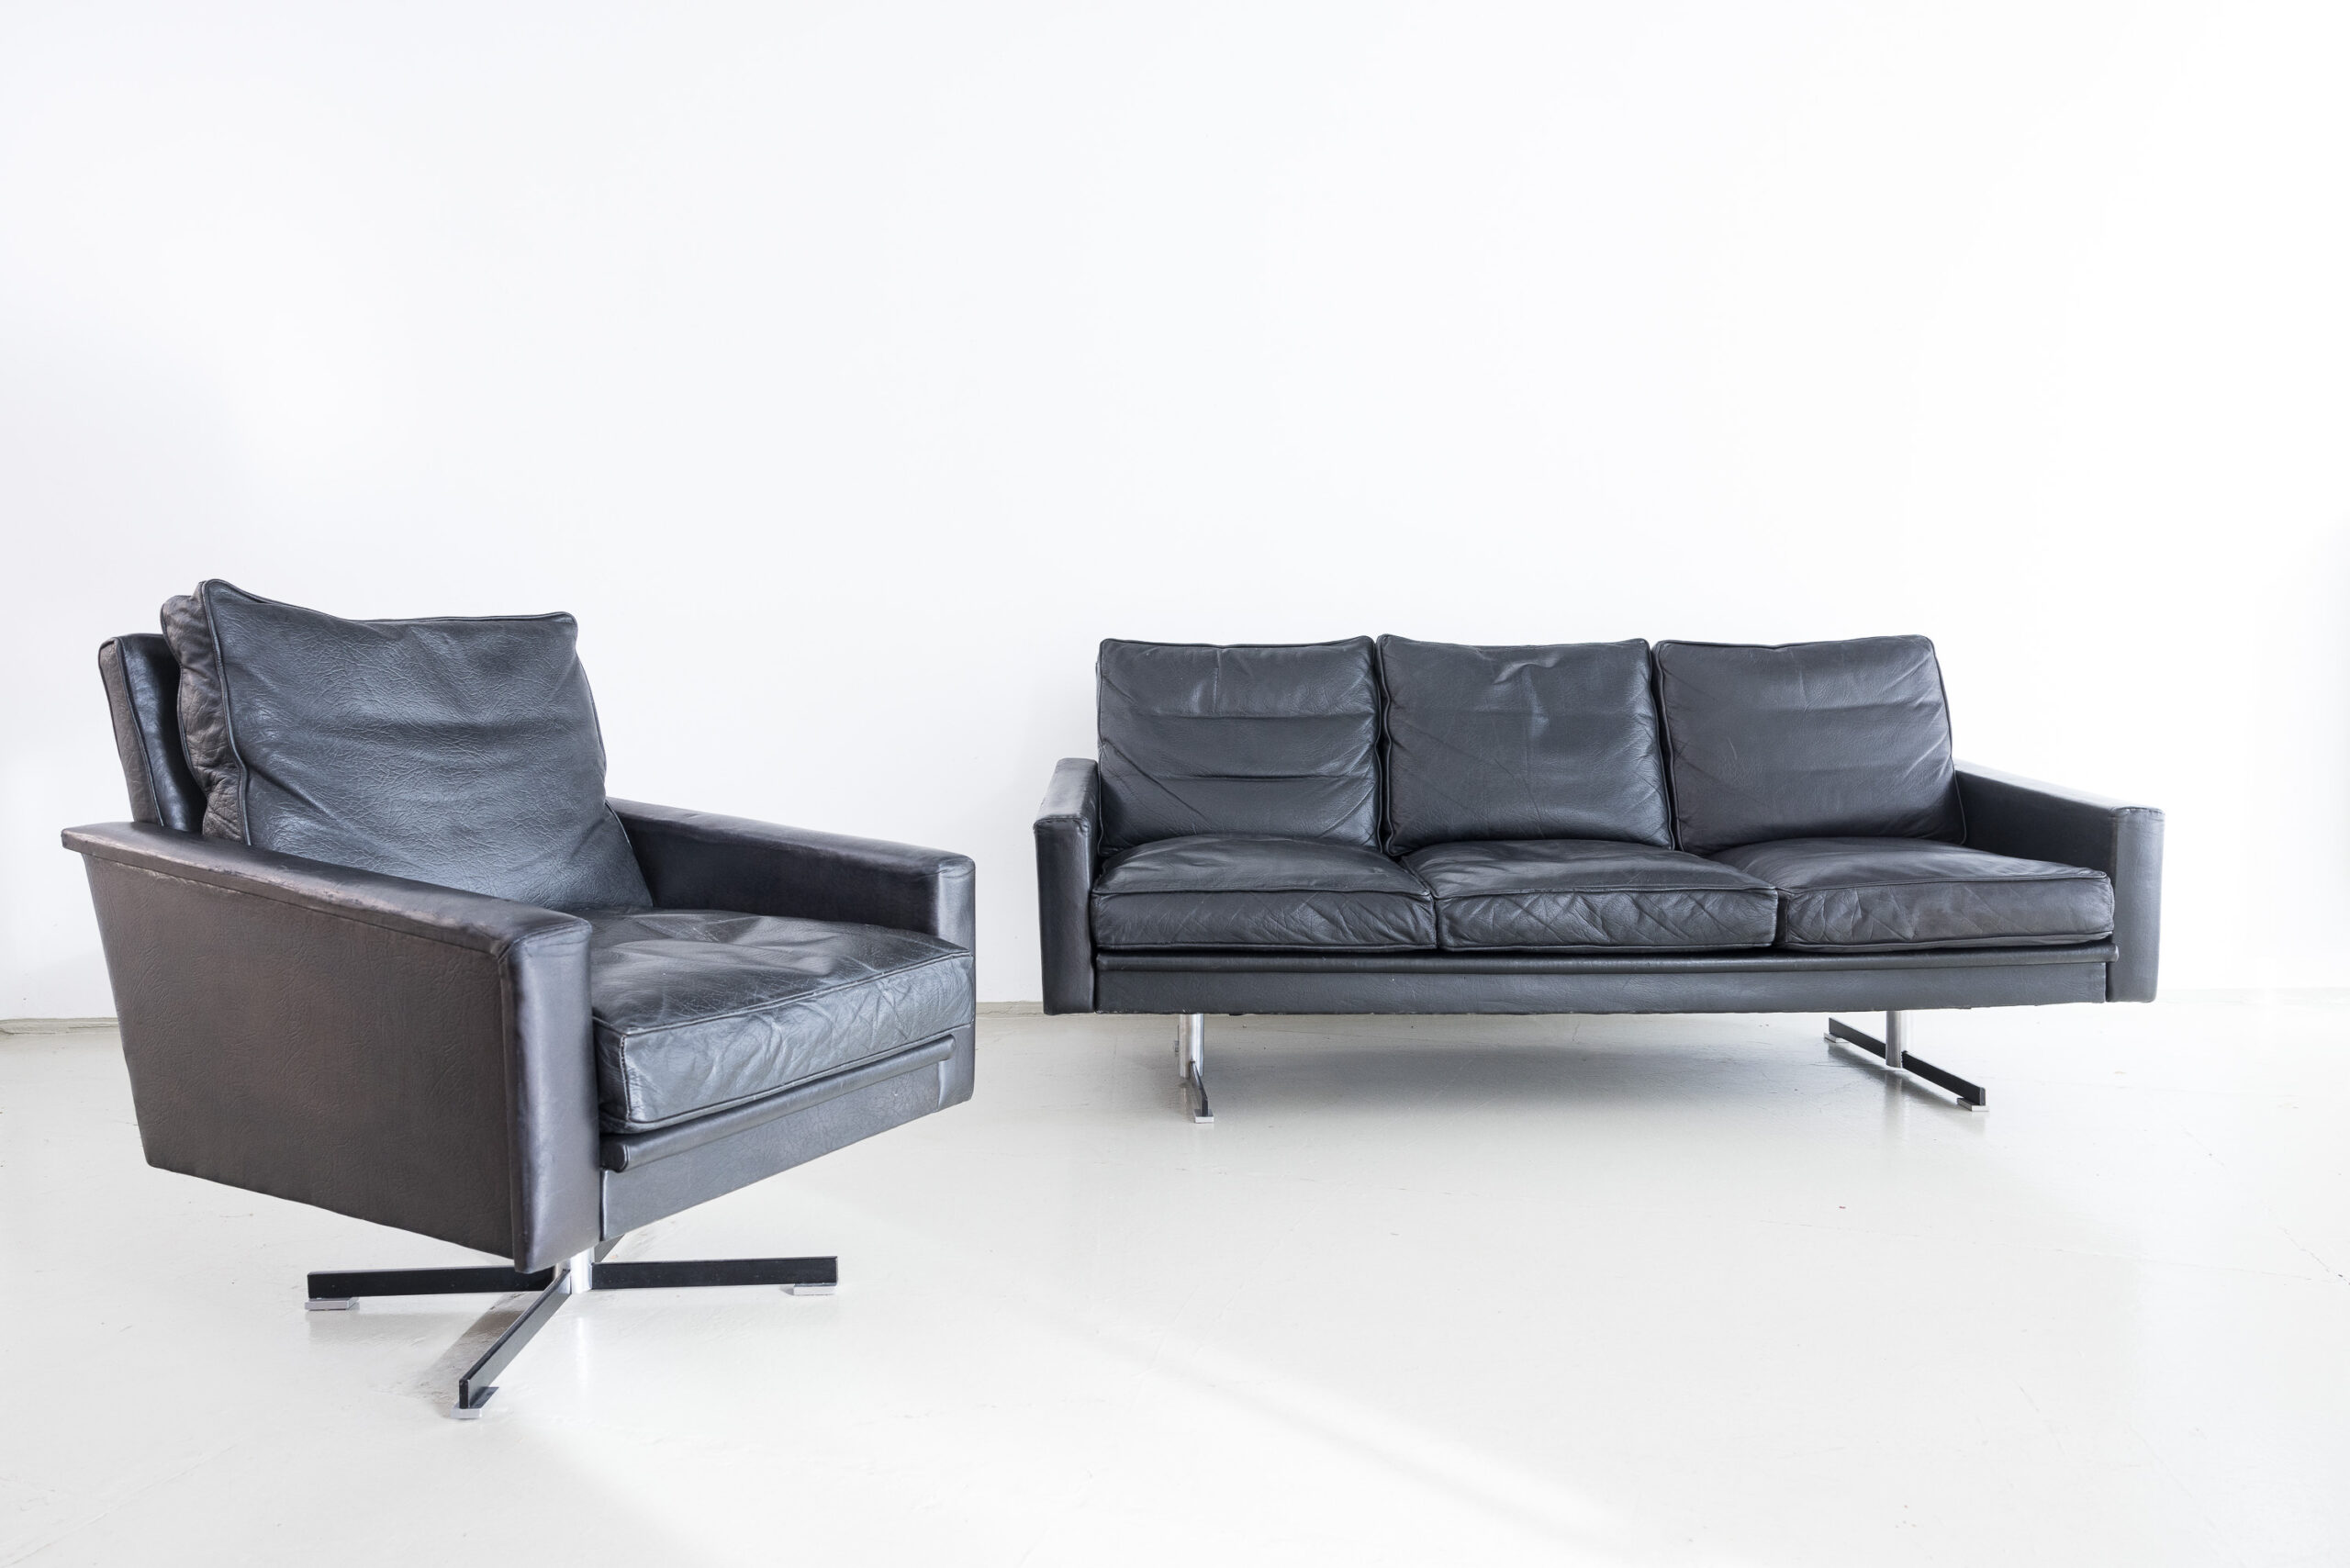 Sitzgruppe (Dreisitzer und Sessel), 1960er Jahre Hersteller/Entwurf: unbekannt Maße Sofa [HxBxT]: 0,96 x 1,78 x 0,80 m Maße Sessel 0,96 x 0,70 x 0,80 m Sitzhöhe: 0,42 m; Sitztiefe: 0,50 m Materialien: schwarzes Leder, verchromtes Stahlgestell Preis: 3.500,- brutto Die markante Sitzgruppe mit hochwertigem Lederbezug besteht aus einem Dreisitzer-Sofa und einem drehbaren Sessel. Die minimalistische Linienführung verleiht den Möbeln einen strengen Charakter. Sie wirken dank der Chromgestelle, der dynamisch geformten Armlehnen und der Narbung des Leders aber trotzdem wohnlich und bequem. Die Möbel wurden fachgerecht restauriert und befinden sich in einem guten Erhaltungszustand. Sessel, Teak, 1960er Jahre Hersteller/Entwurf: unbekannt Maße [HxBxT]: 0,72 x 0,60 x 0,64 m Sitzhöhe: 0,42m Sitztiefe: 0,48m Materialien: Teak, Polster mit Stoffbezug Preis: 935,- brutto Der Sessel überzeugt durch seine schlichte, minimalistische Gestaltung und einen hohen Sitzkomfort. Ansprechende Details wie die eingezogenen Armlehnen, leicht geschwungenen Seitenzargen und eine ungewöhnlich geformte Rückenlehne lassen ein durchdachtes Design erkennen. Der Sessel wurde komplett neu gepolstert und bezogen. Bei dem Bezug haben wir uns für einen Stoff in Leinwandbindung entschieden, der durch seine Struktur und den angenehmen Gelbton gut mit dem schlichten Teak-Gestell harmoniert. Der Sessel befindet sich in einem ausgezeichneten Erhaltungszustand. 